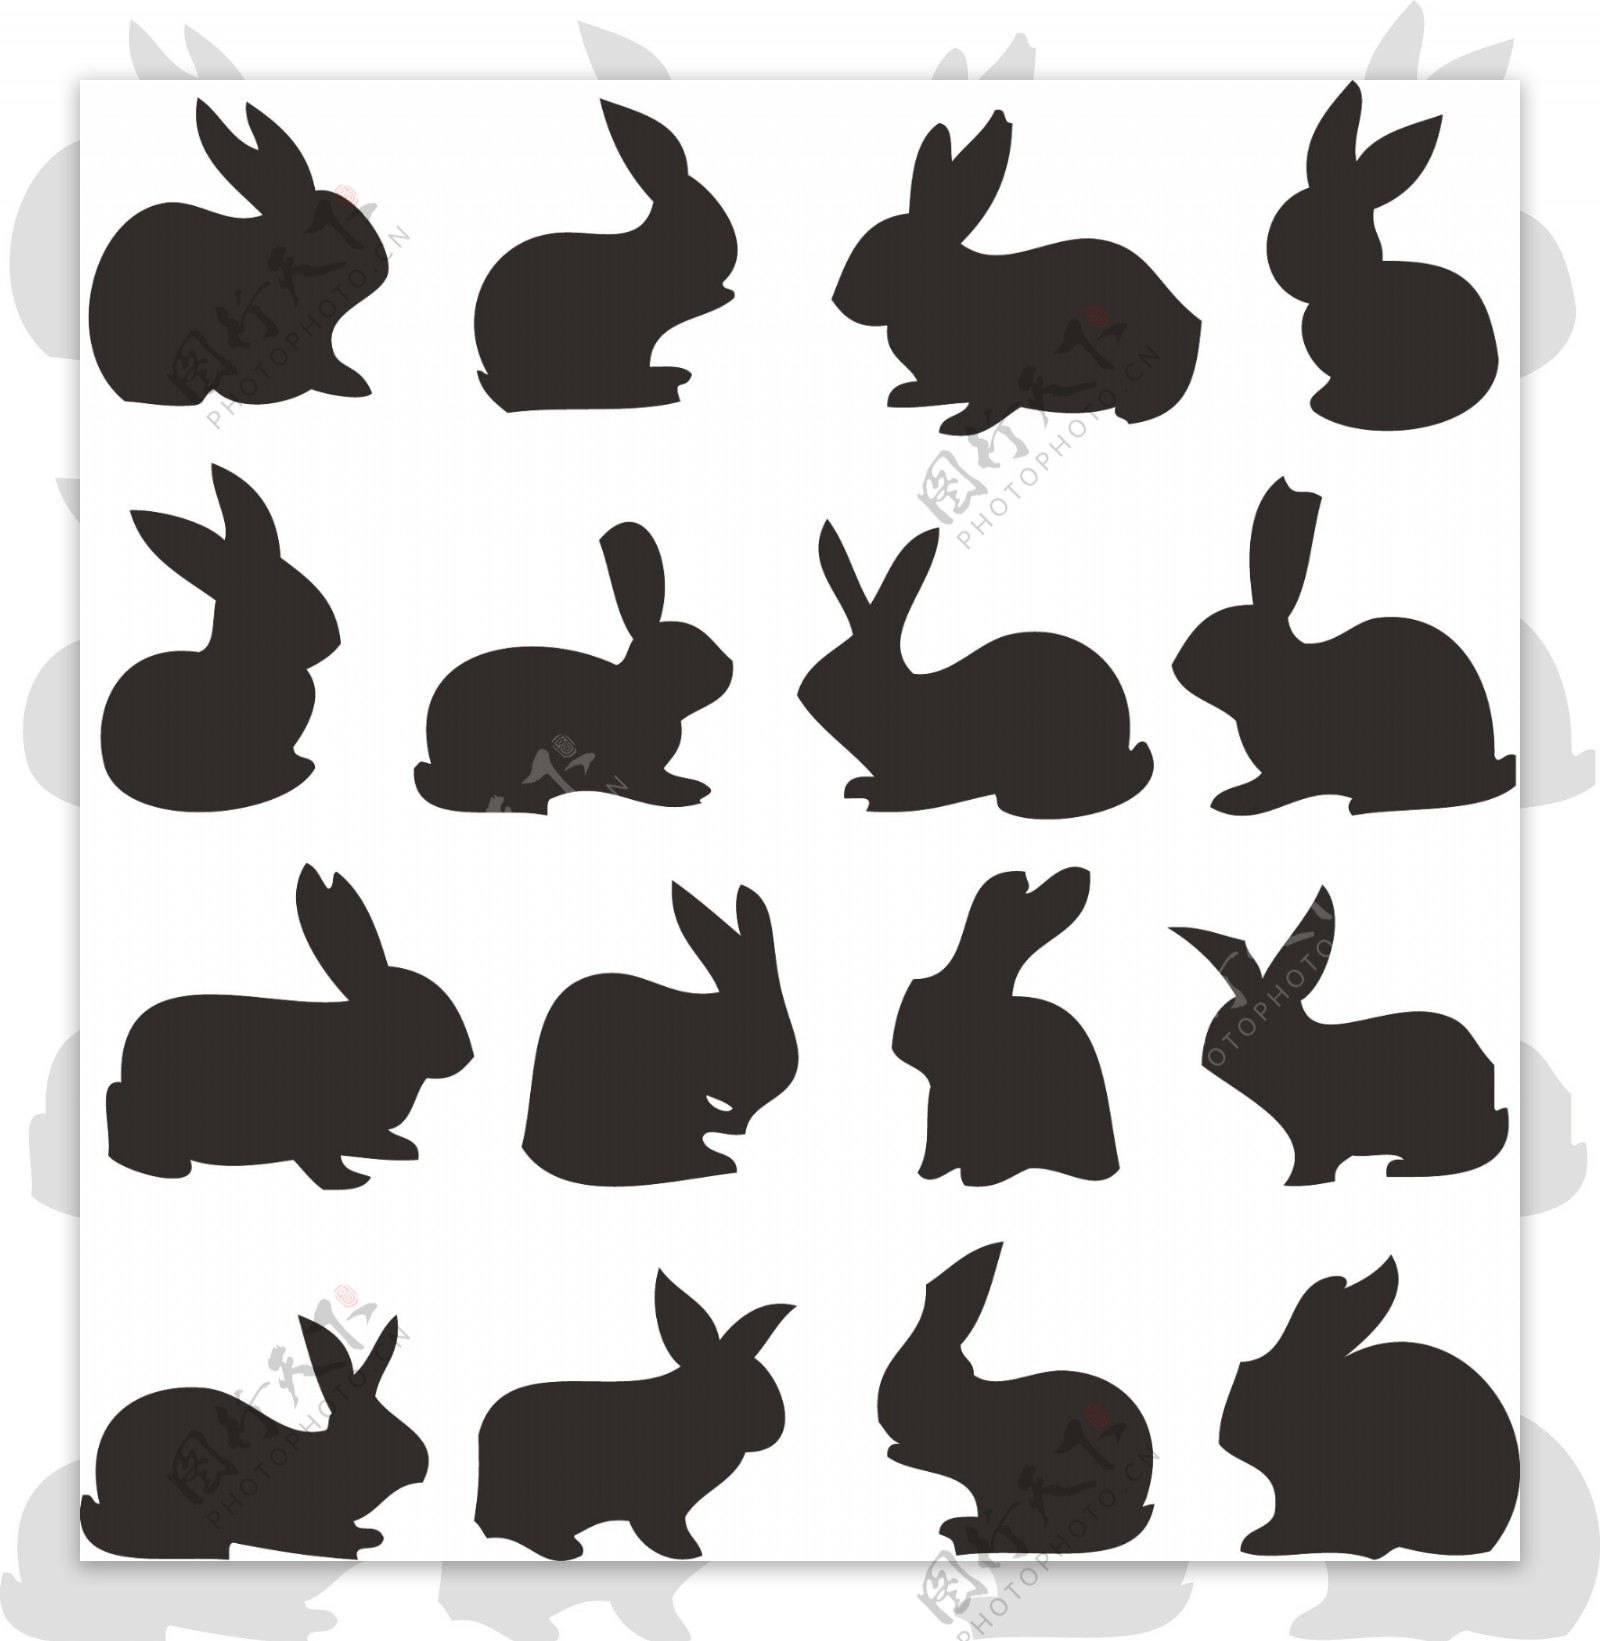 兔子剪影矢量图片